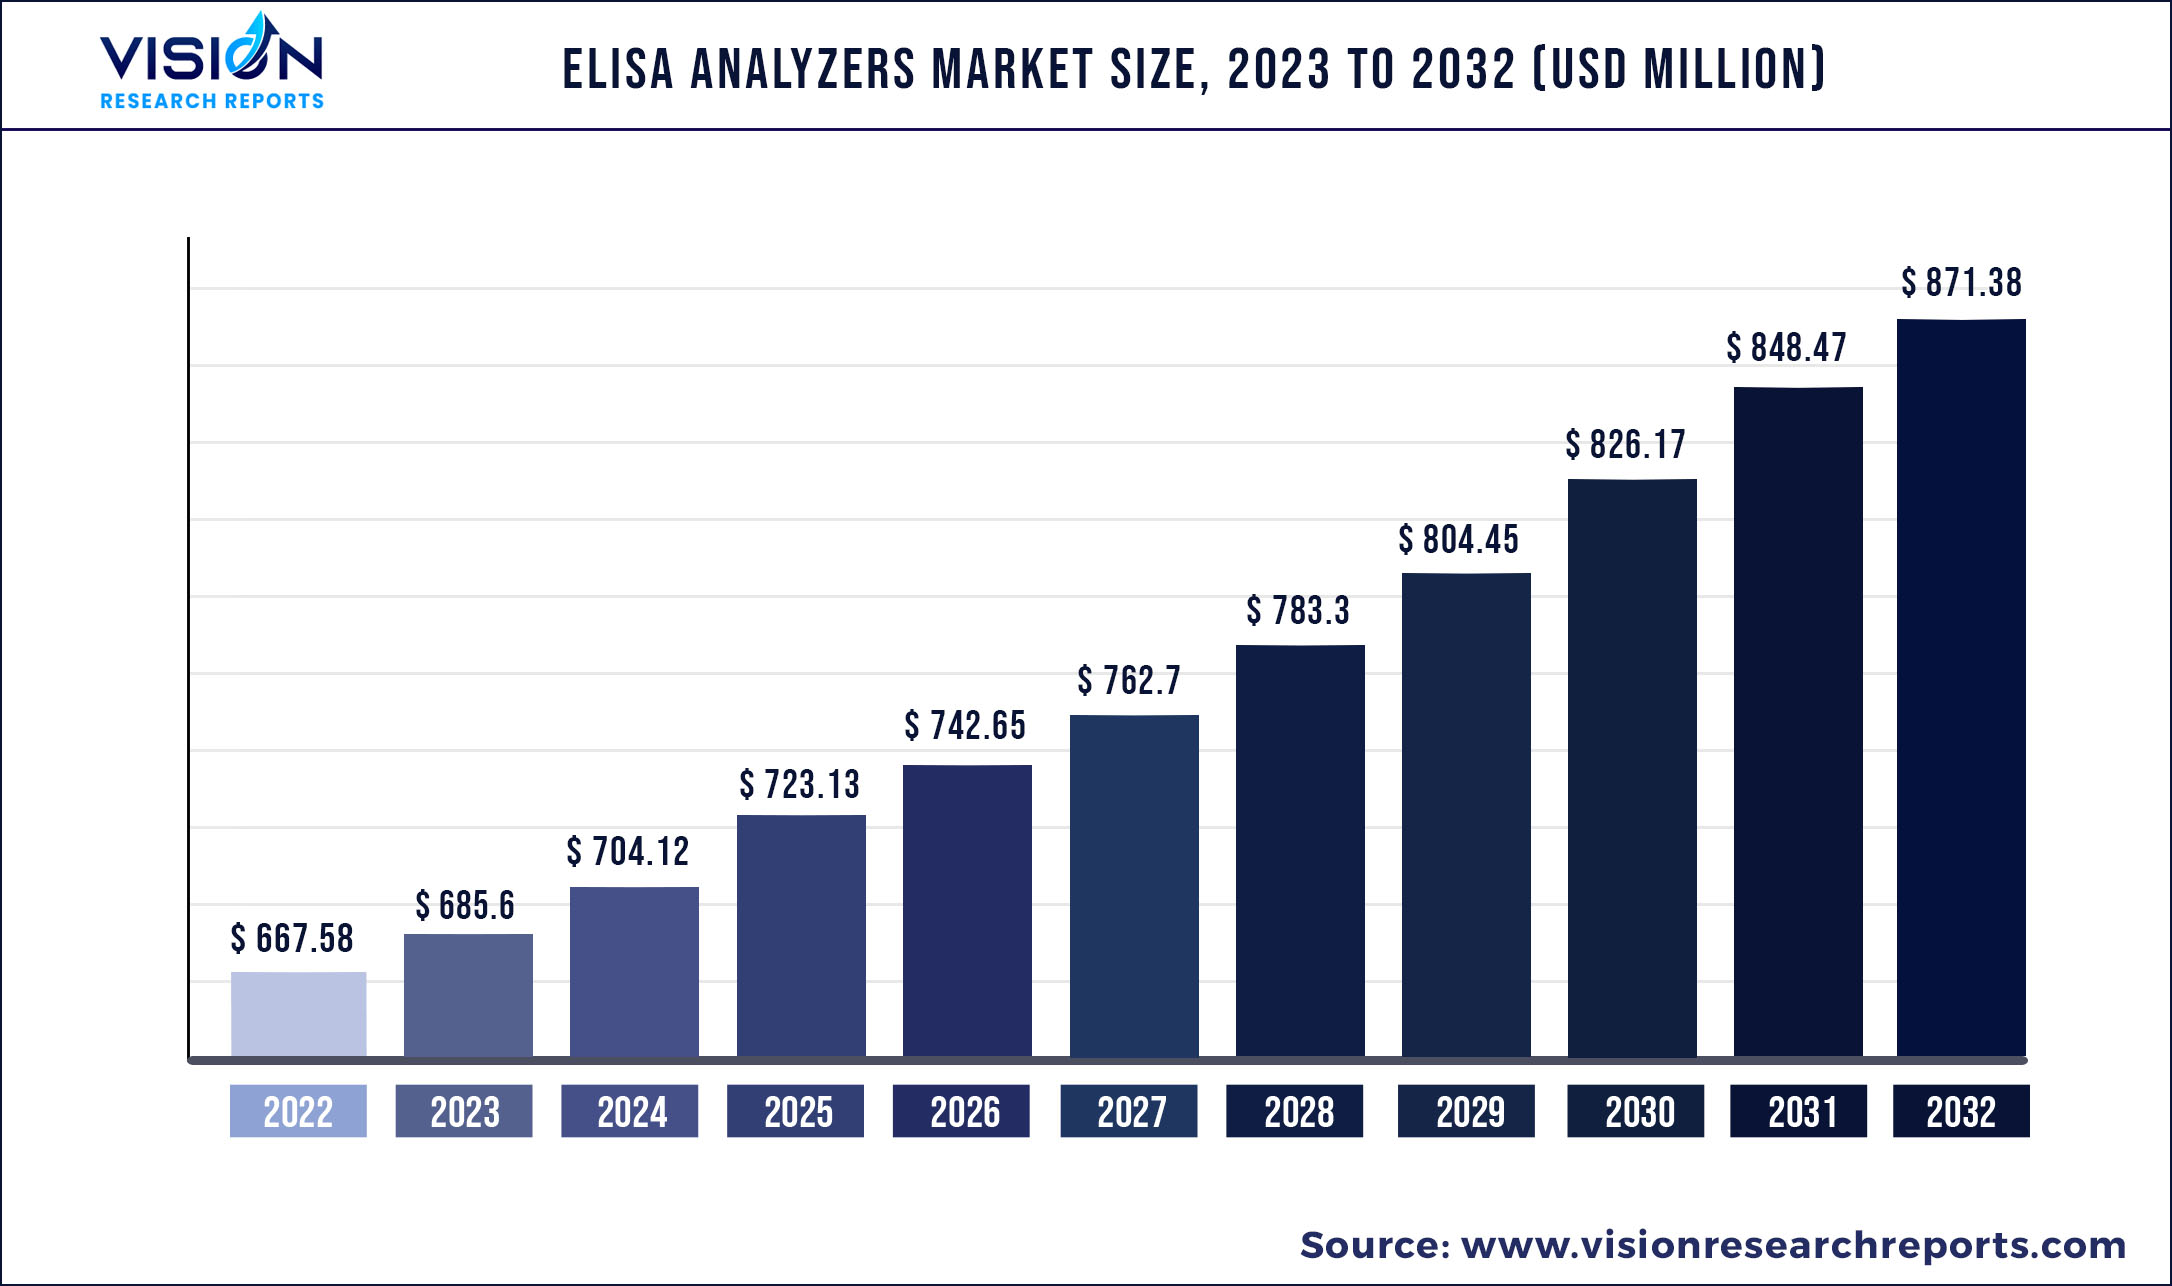 ELISA Analyzers Market Size 2023 to 2032